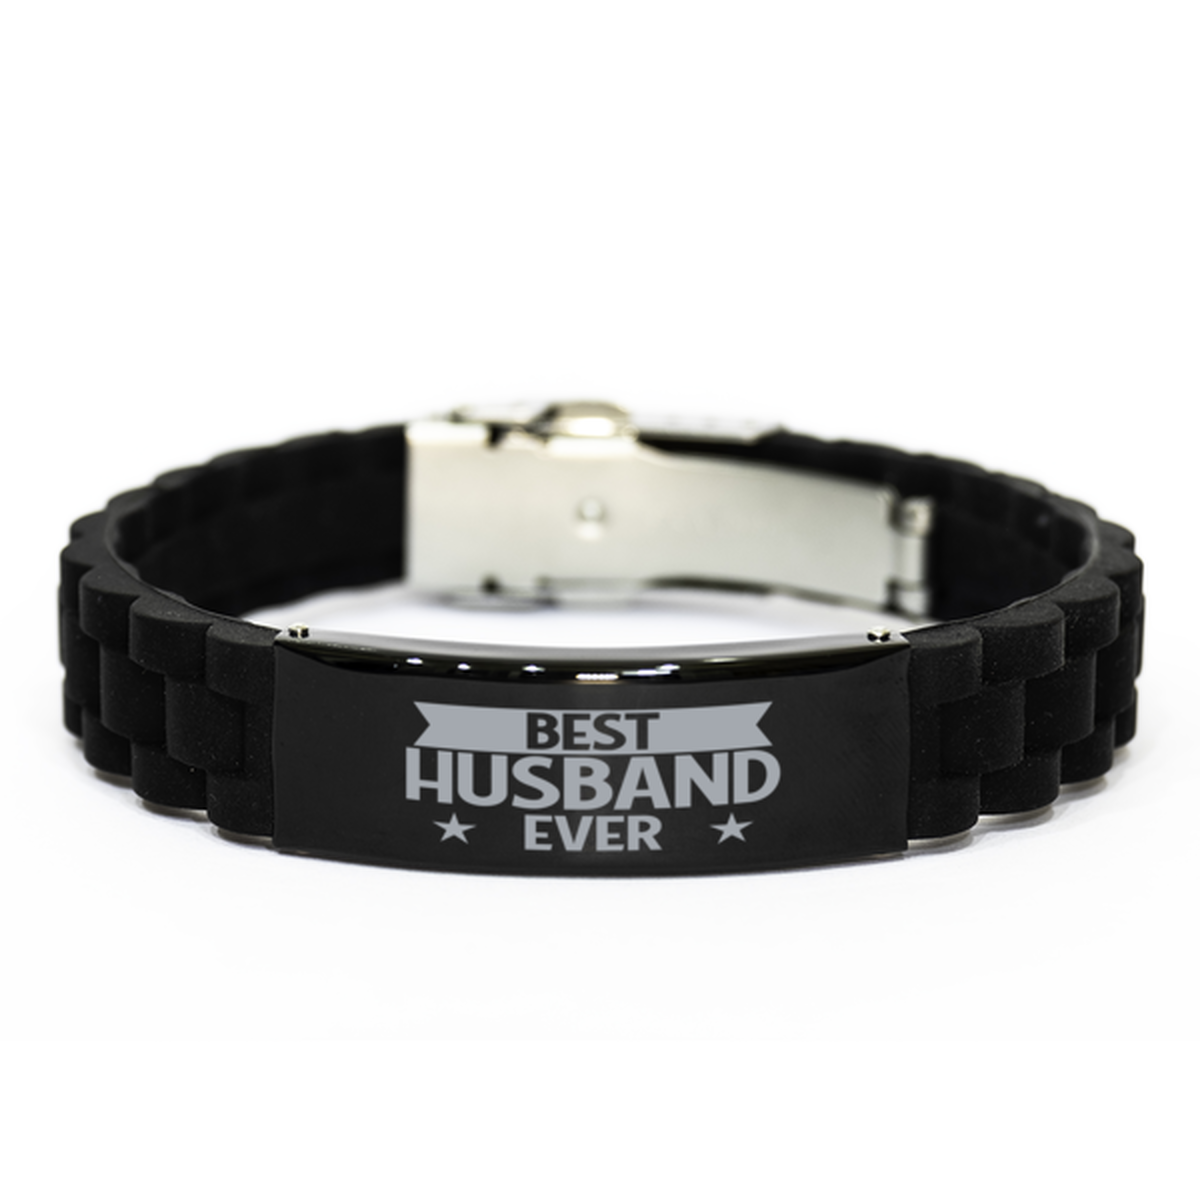 Best Husband Ever Husband Gifts, Funny Black Engraved Bracelet For Husband, Family Gifts For Men